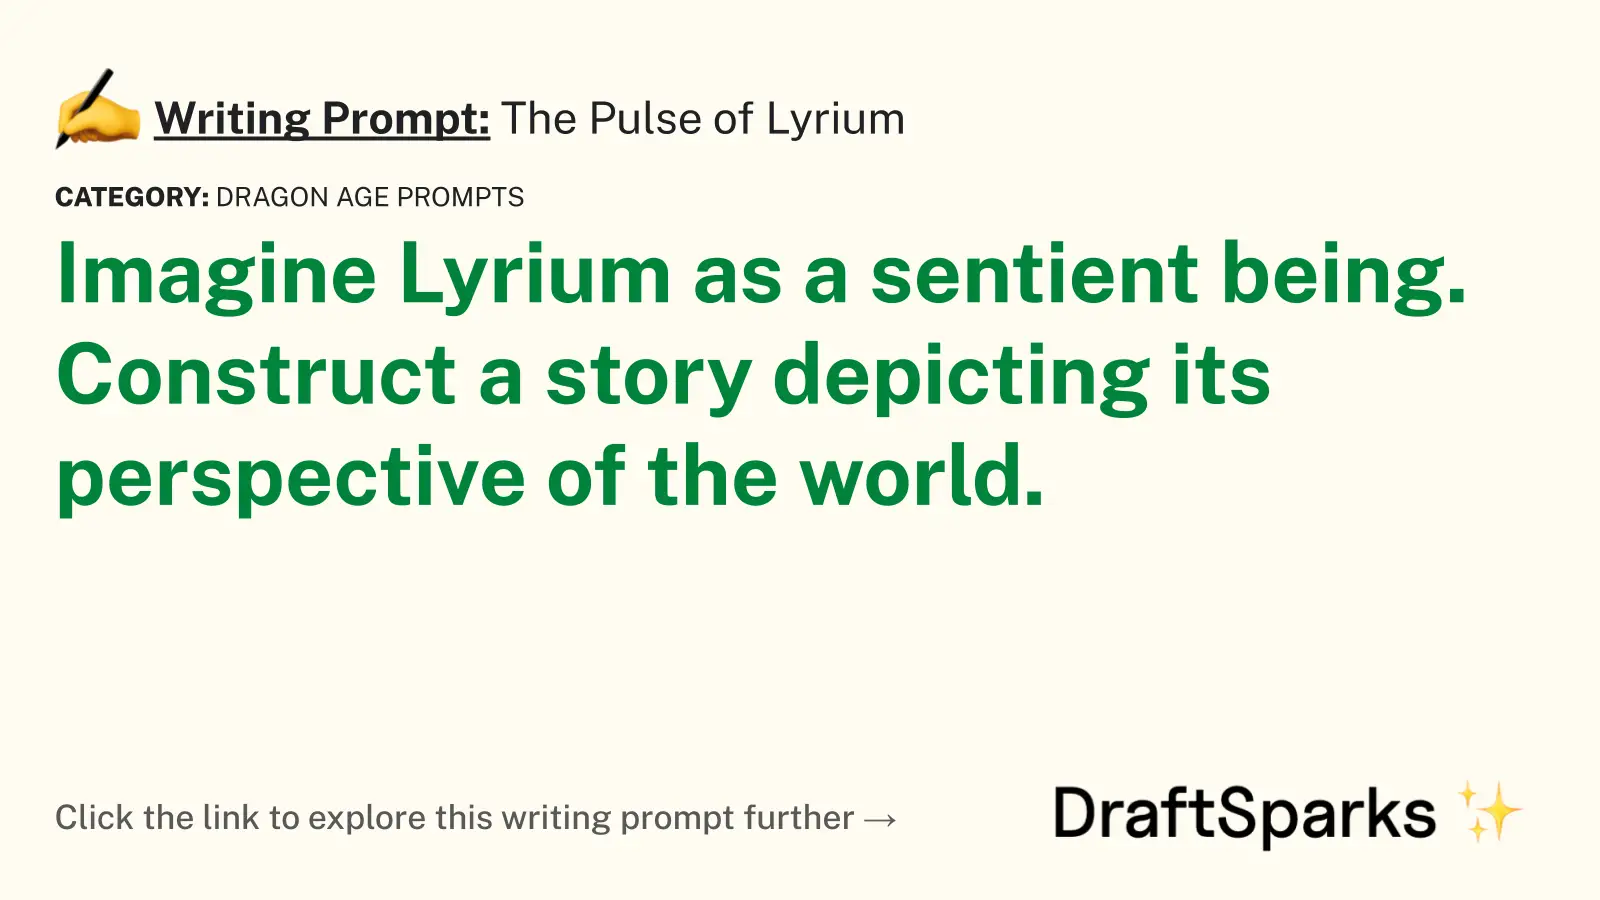 The Pulse of Lyrium